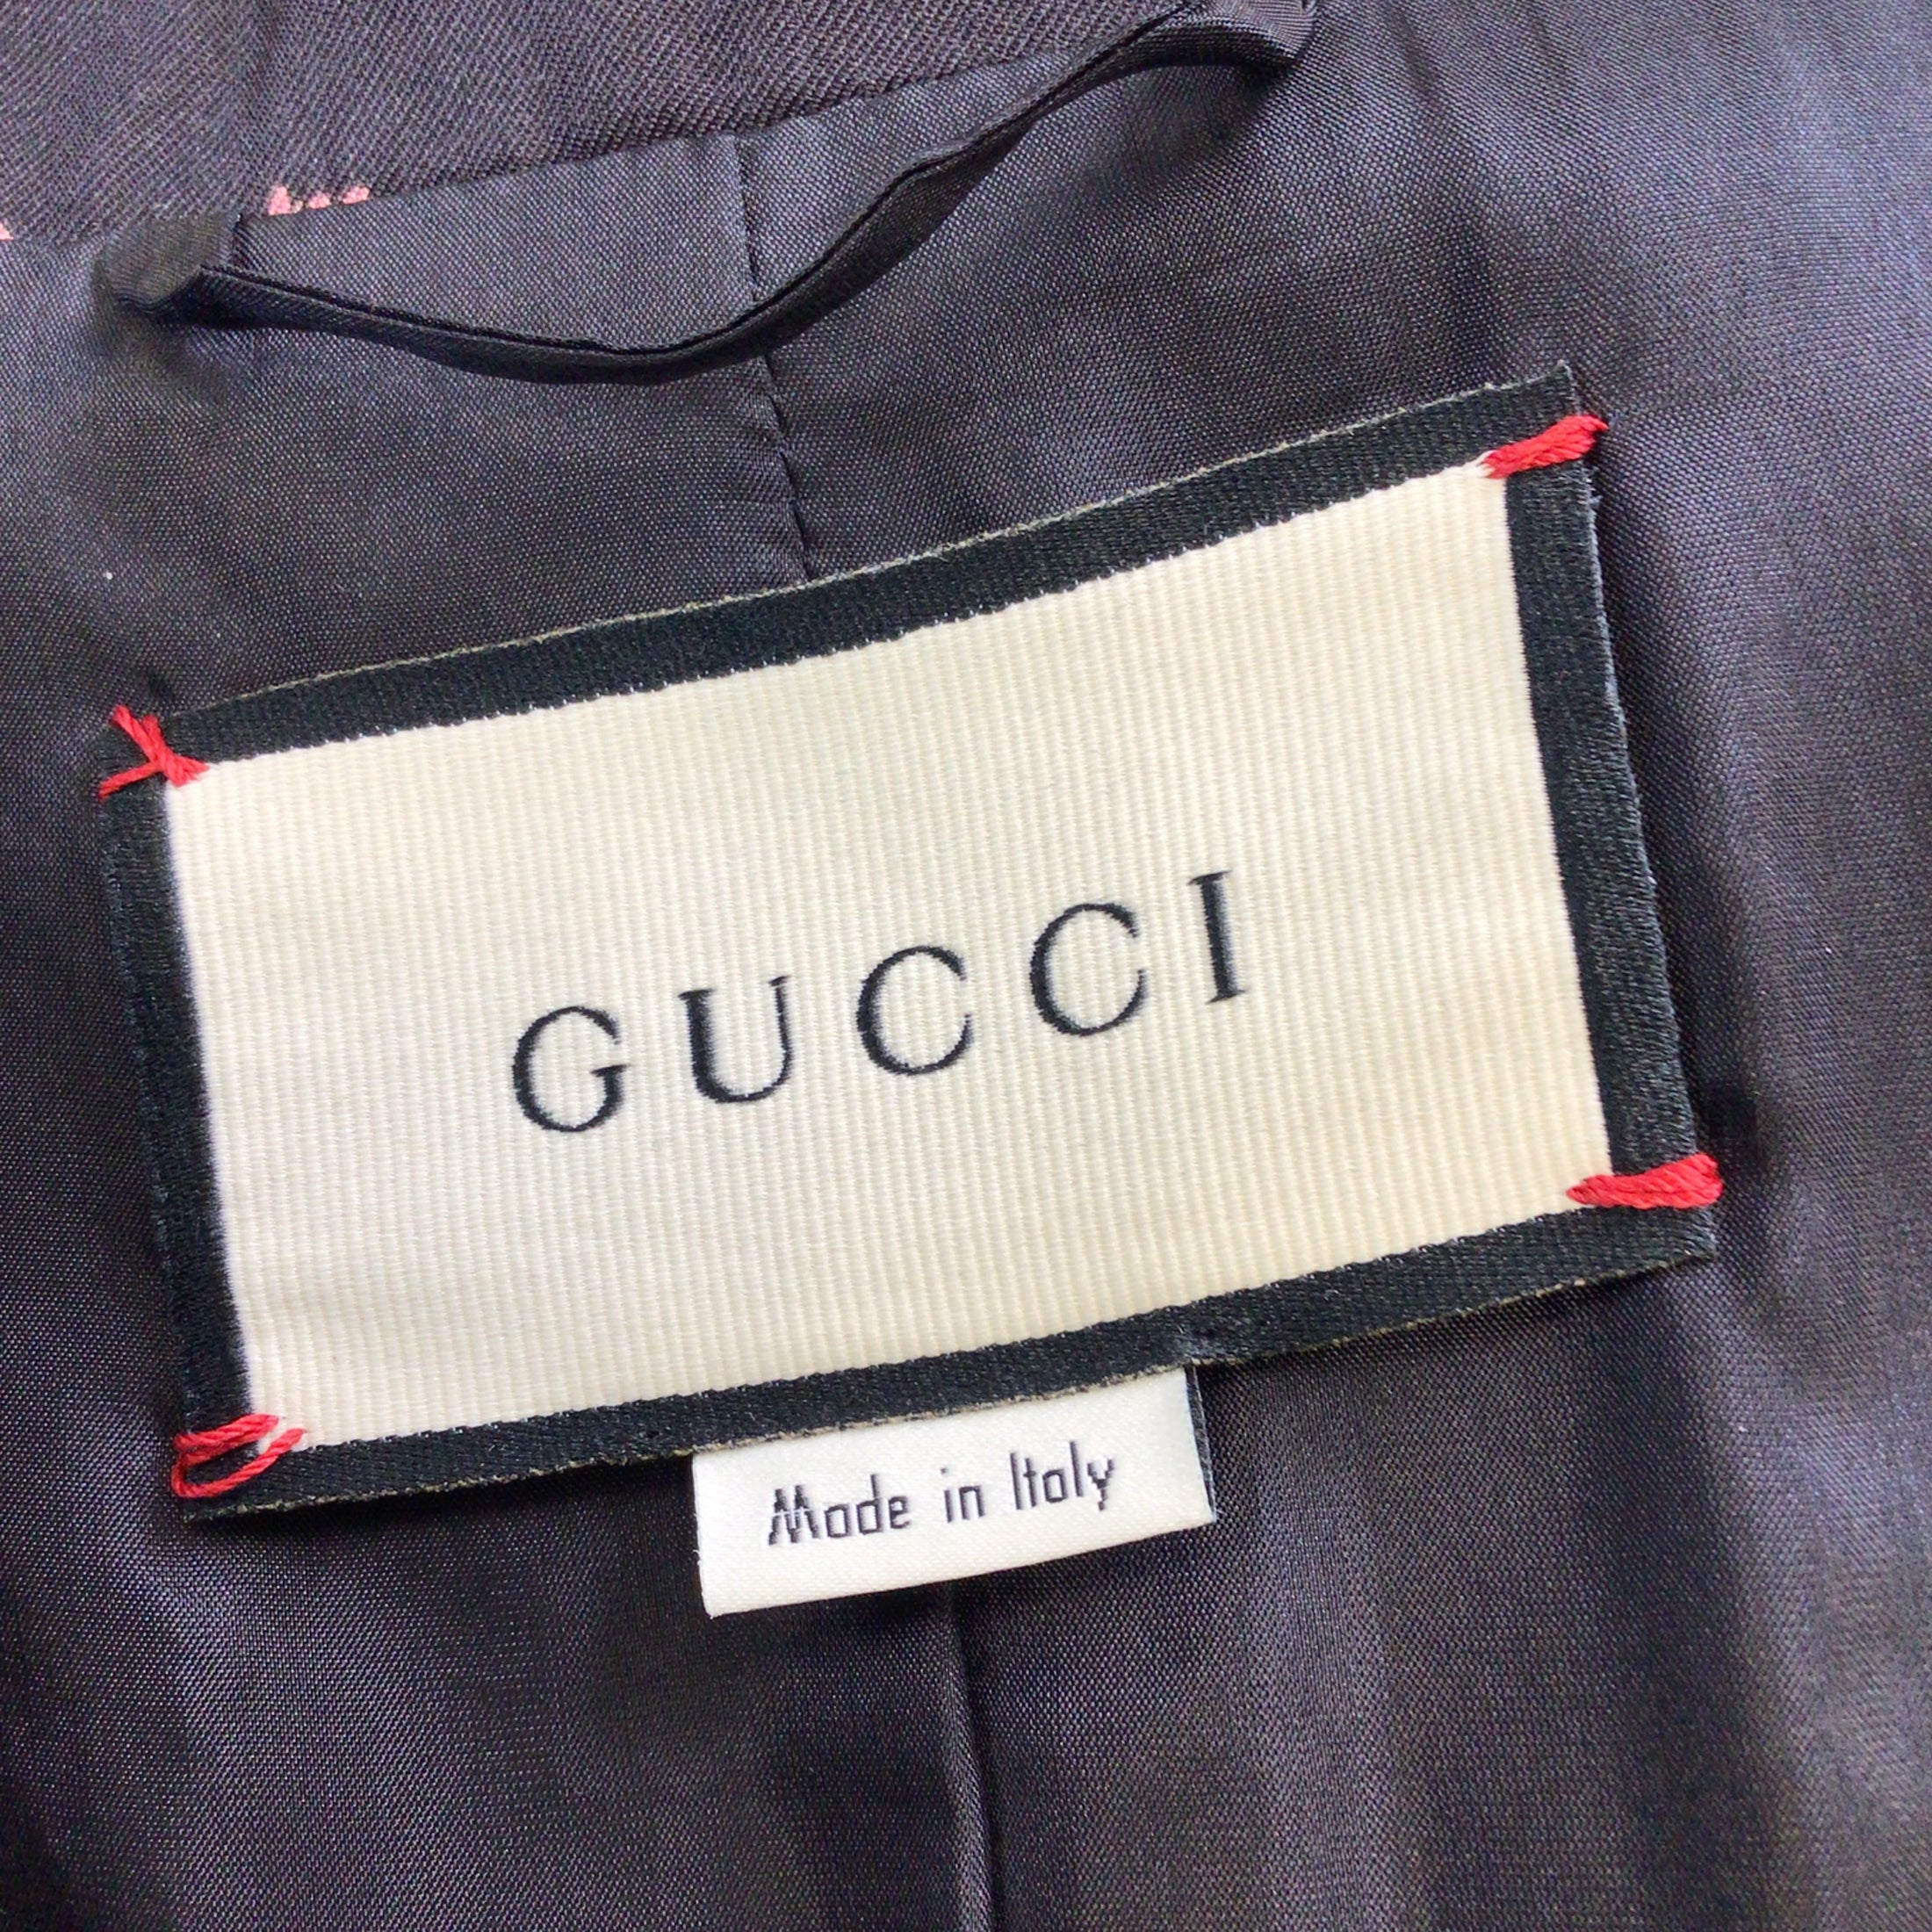 Gucci Black / Pink / Green Multi 2019 Flora Print Silk Jacket